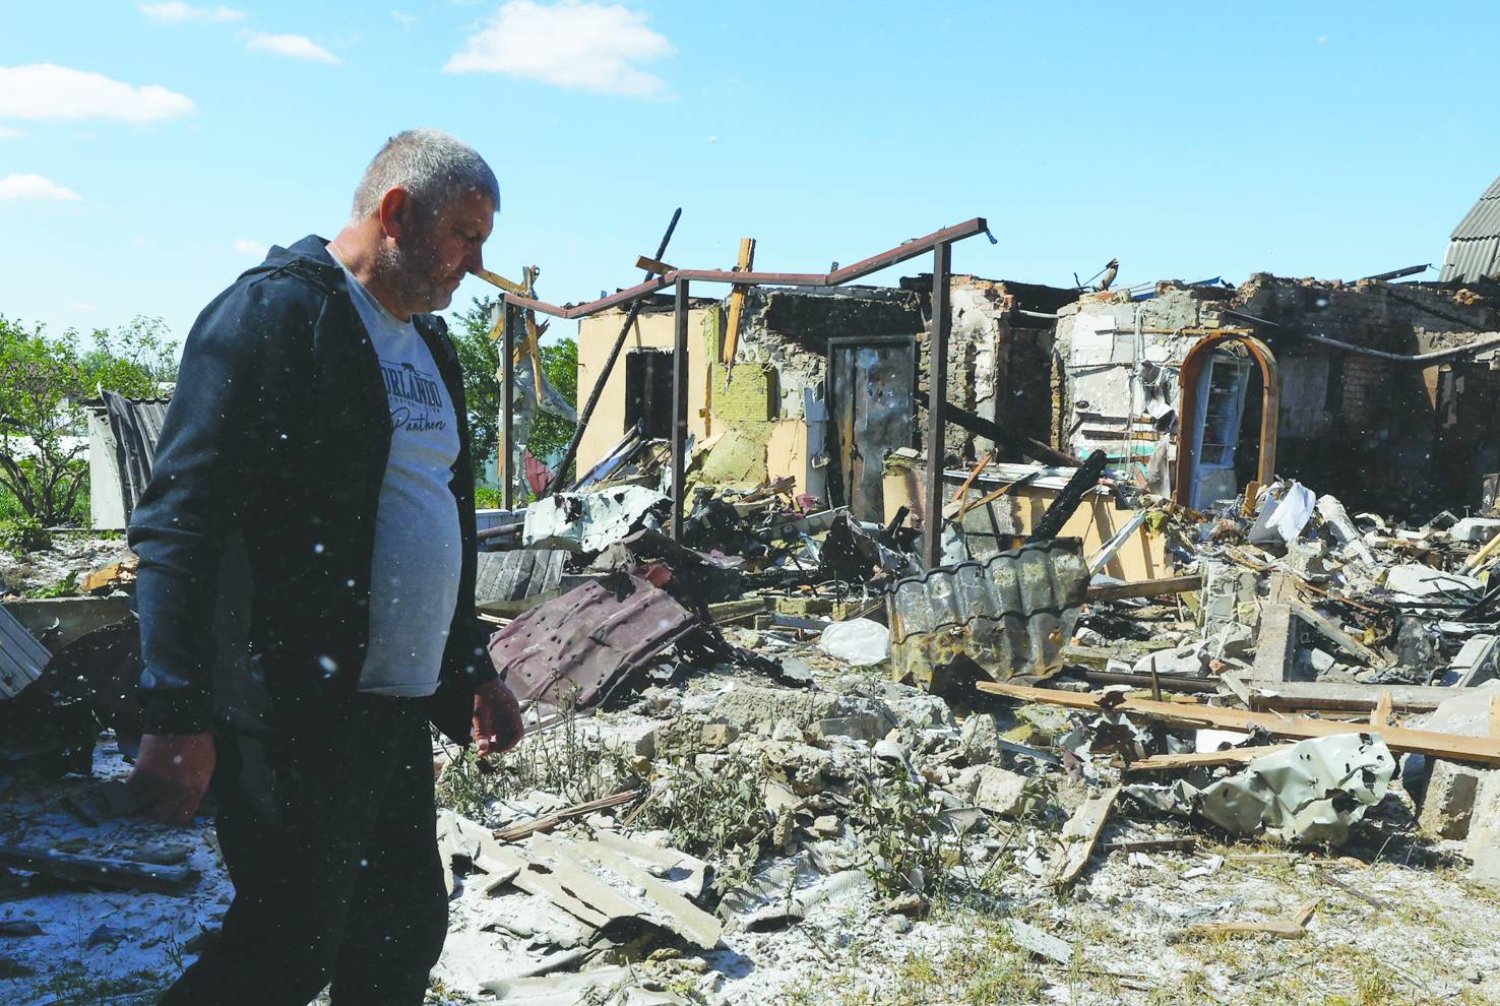 
أوكراني يسير بجانب منزل تعرّض للدمار بعد إطلاق صاروخي ليلي في قرية كراسيليفكا بالقرب من كييف (إ.ب.أ)